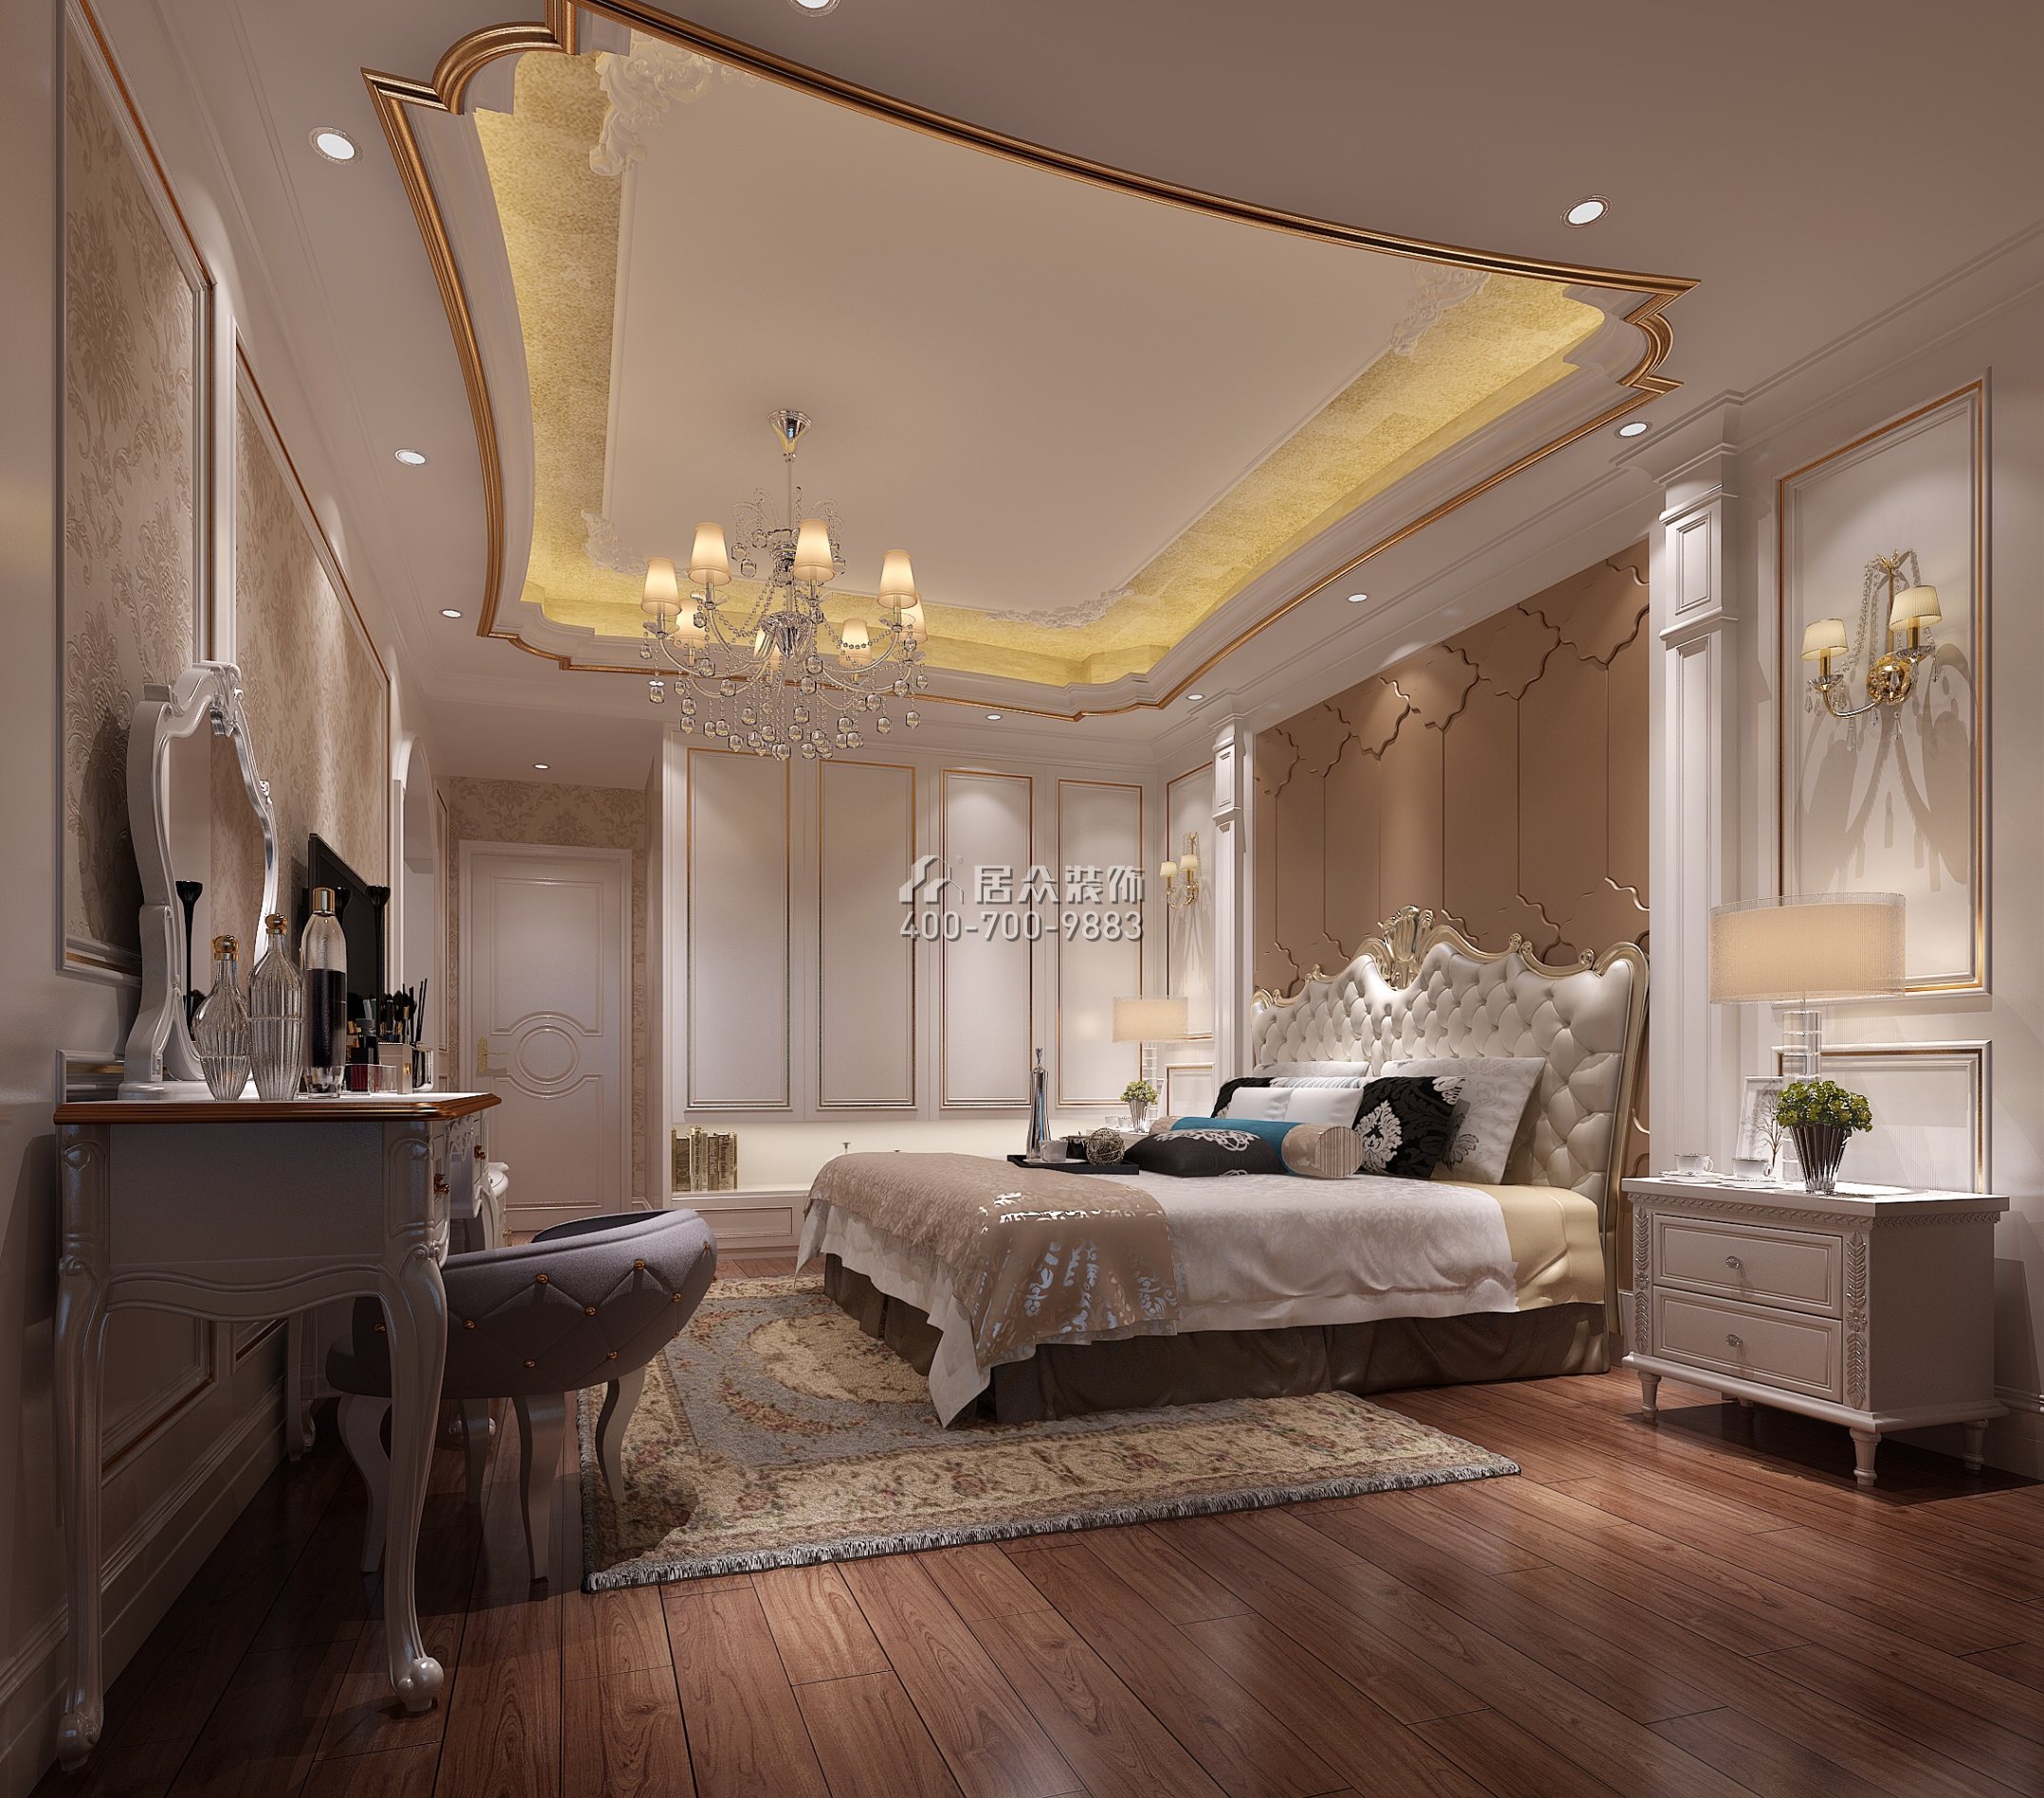 广州华发四季182平方米欧式风格平层户型卧室装修效果图